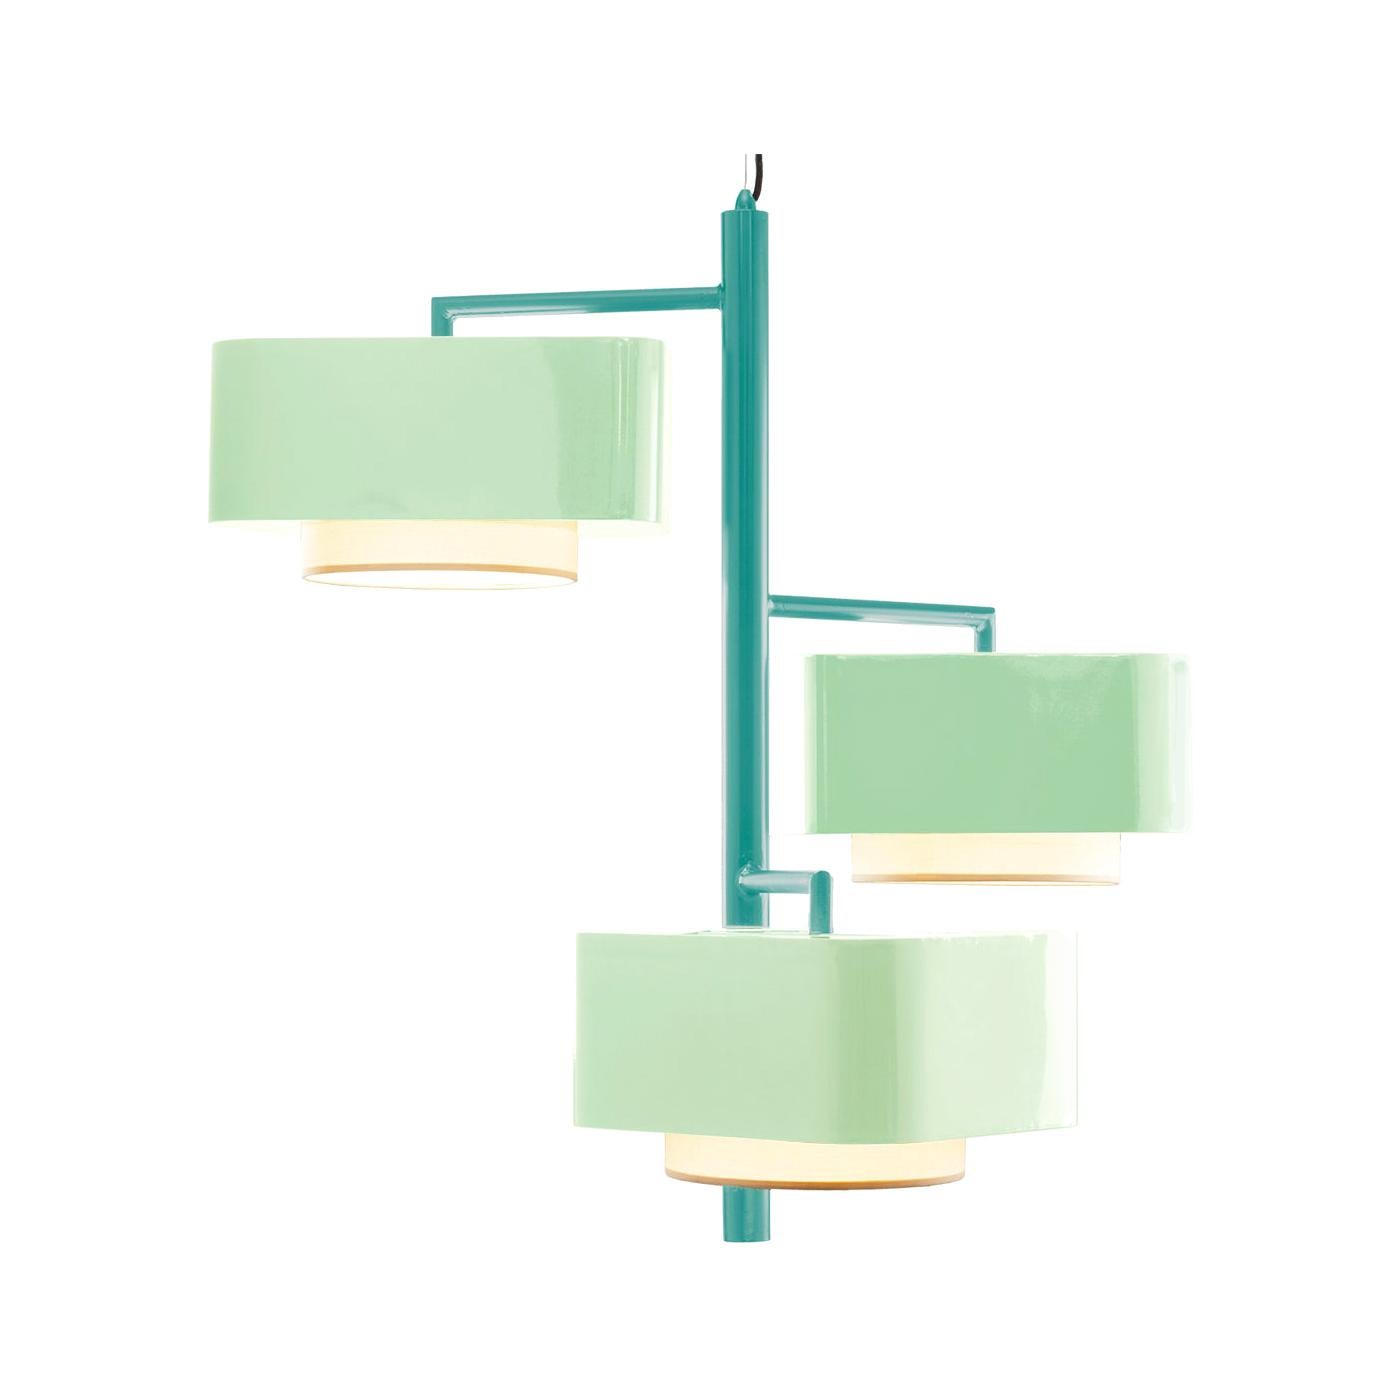 Lampe à suspension contemporaine Carousel I d'inspiration Art Deco en bleu menthe et vert